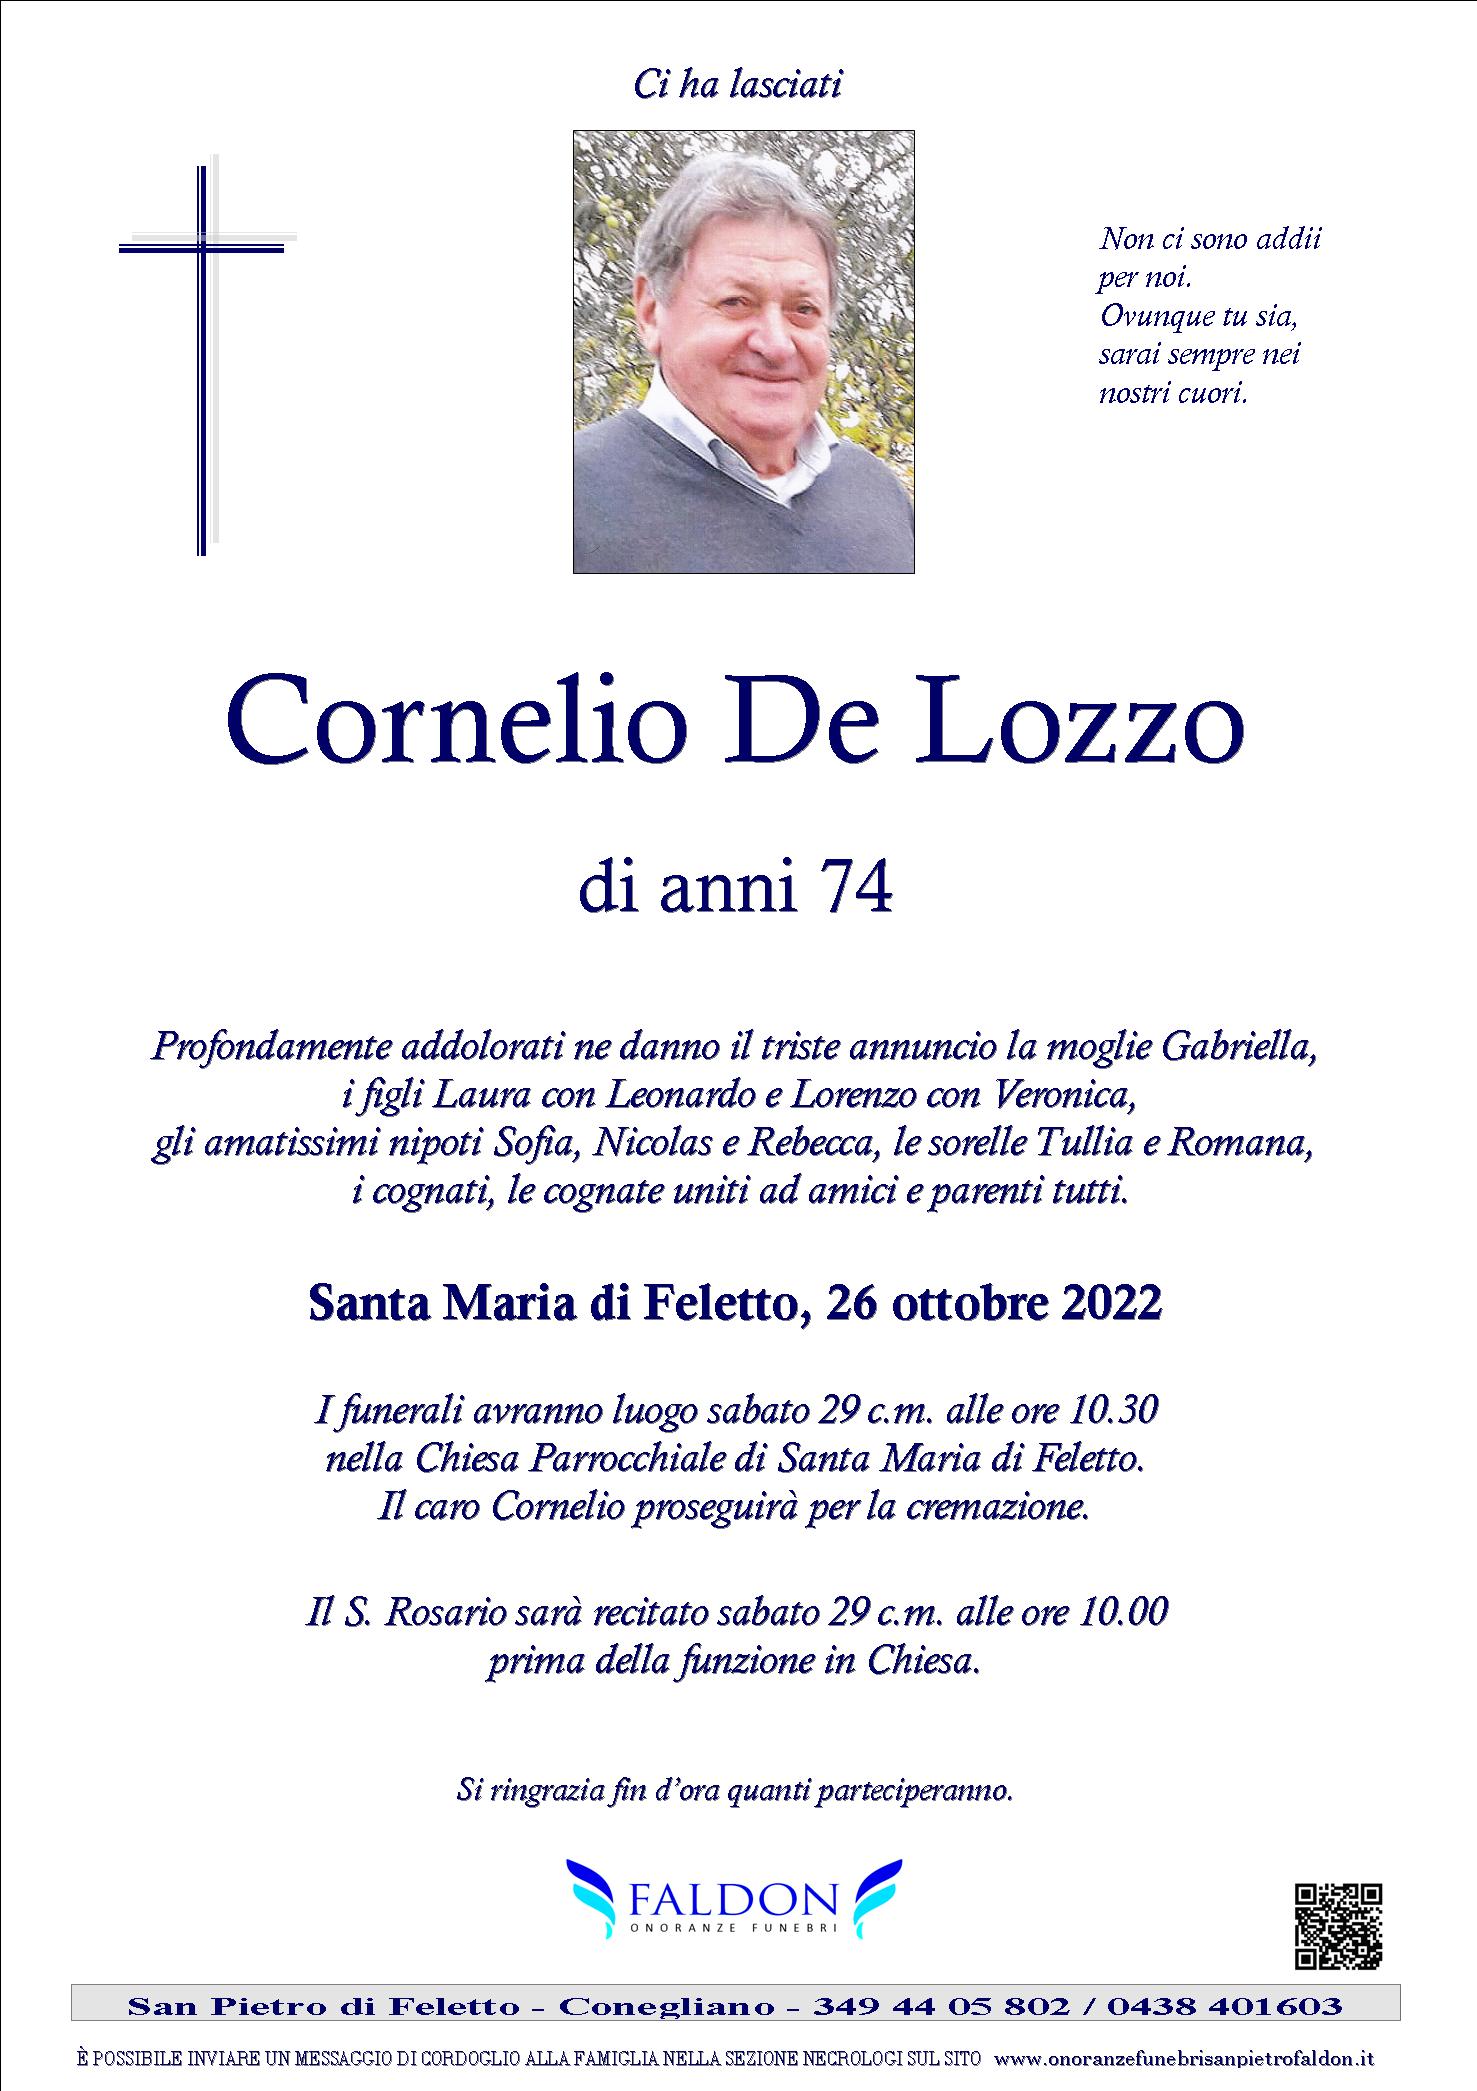 Cornelio De Lozzo